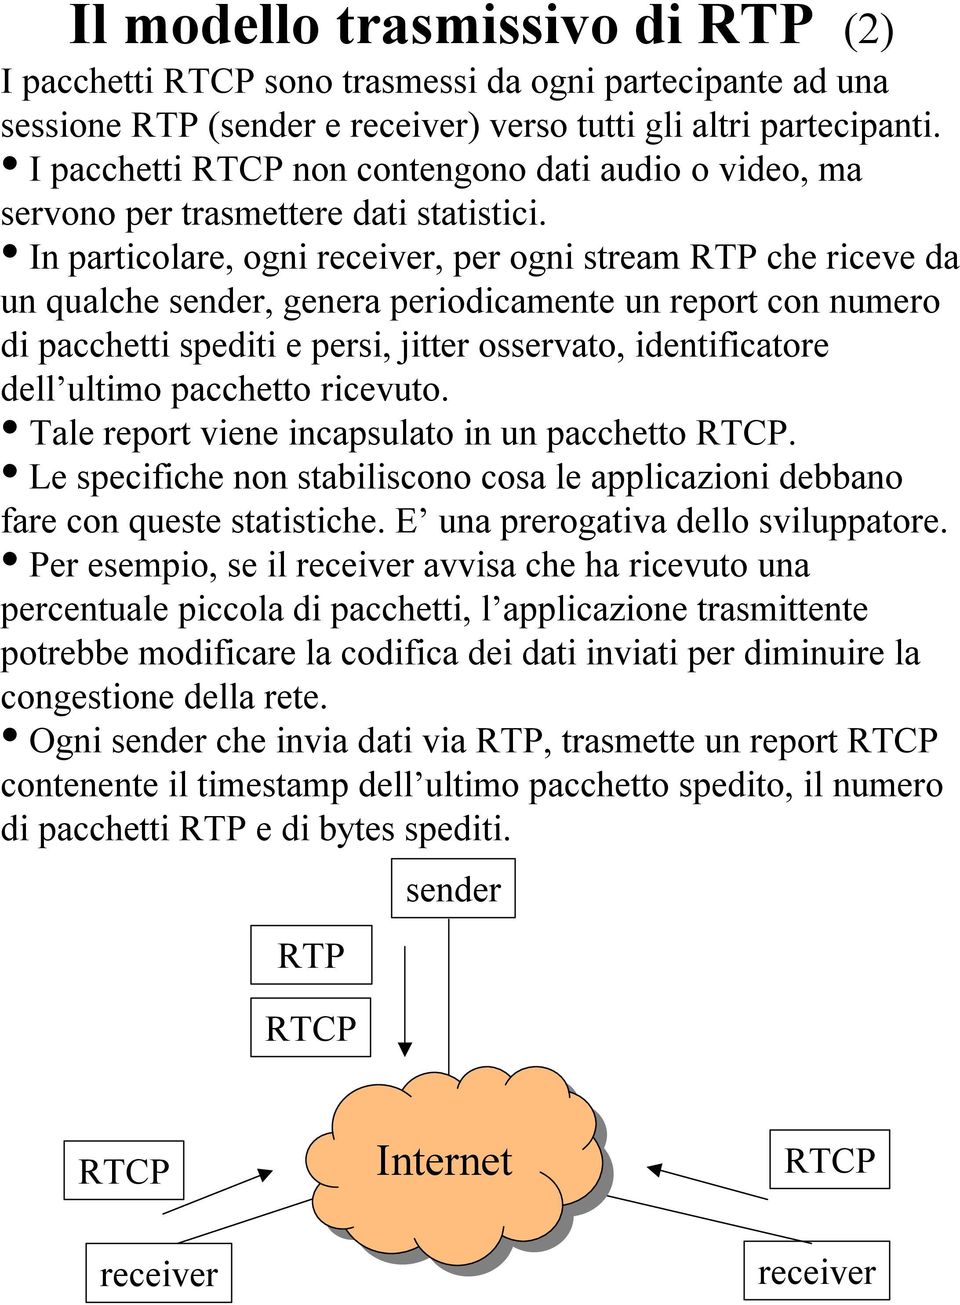 In particolare, ogni receiver, per ogni stream RTP che riceve da un qualche sender, genera periodicamente un report con numero di pacchetti spediti e persi, jitter osservato, identificatore dell